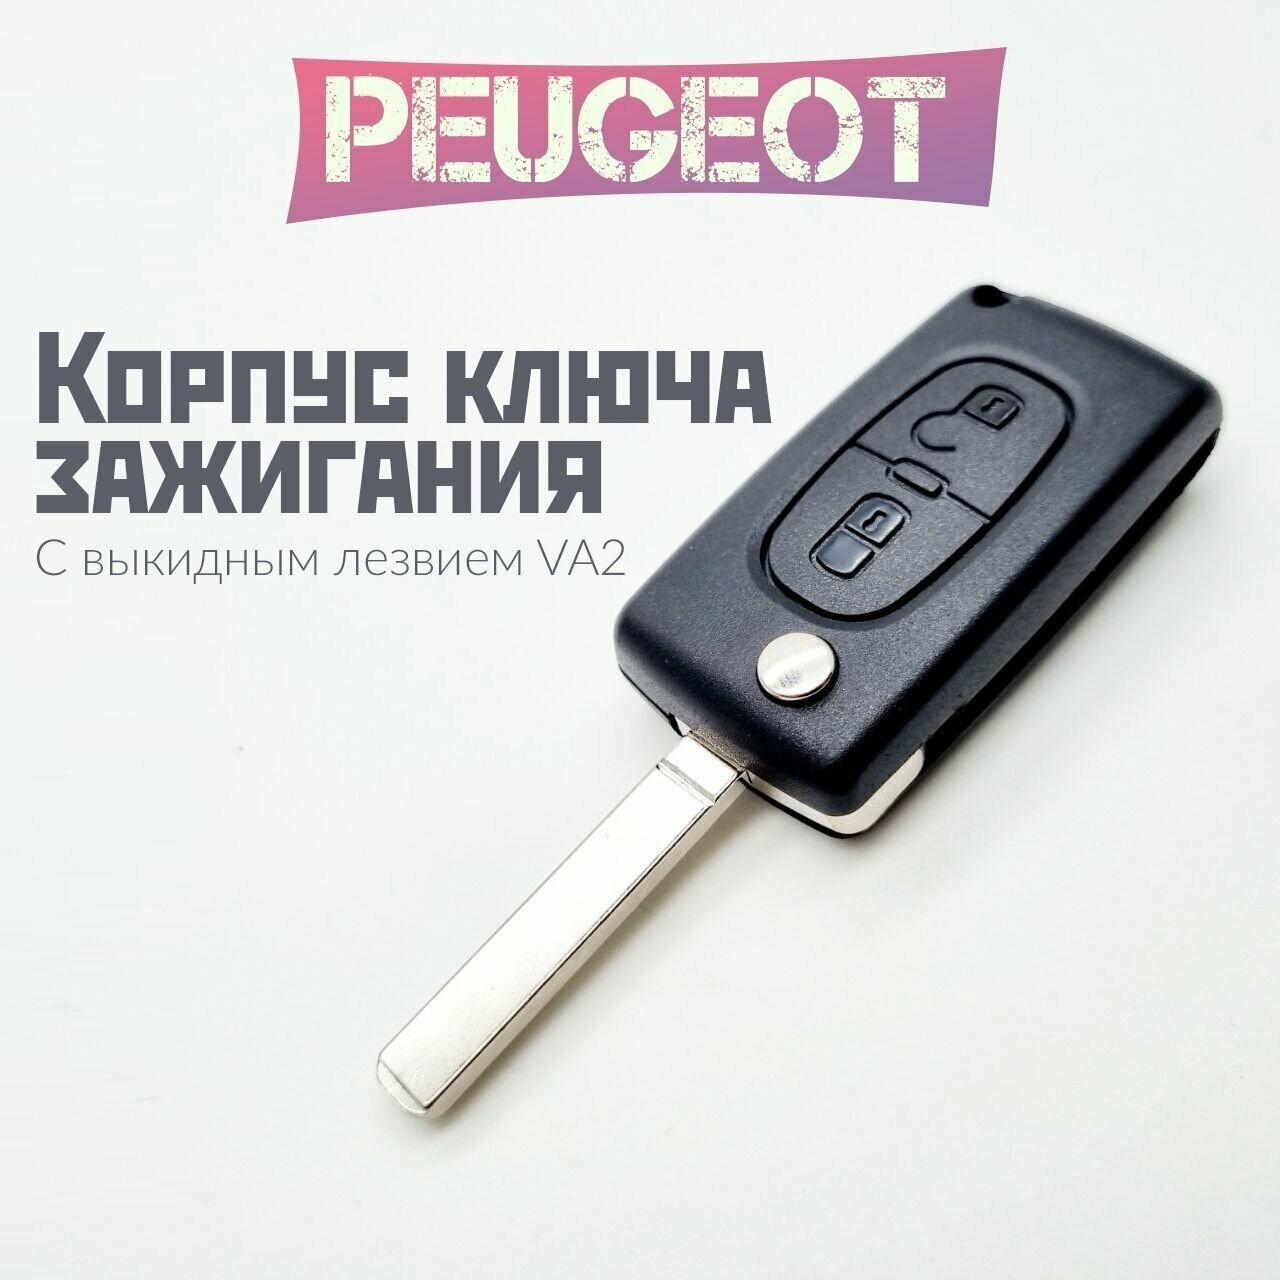 Корпус ключа зажигания Peugeot/Пежо с выкидным лезвием (VA2), 2 кнопки / CE0523 для Peugeot 107 207 307 308 407 408 508 3008 4008